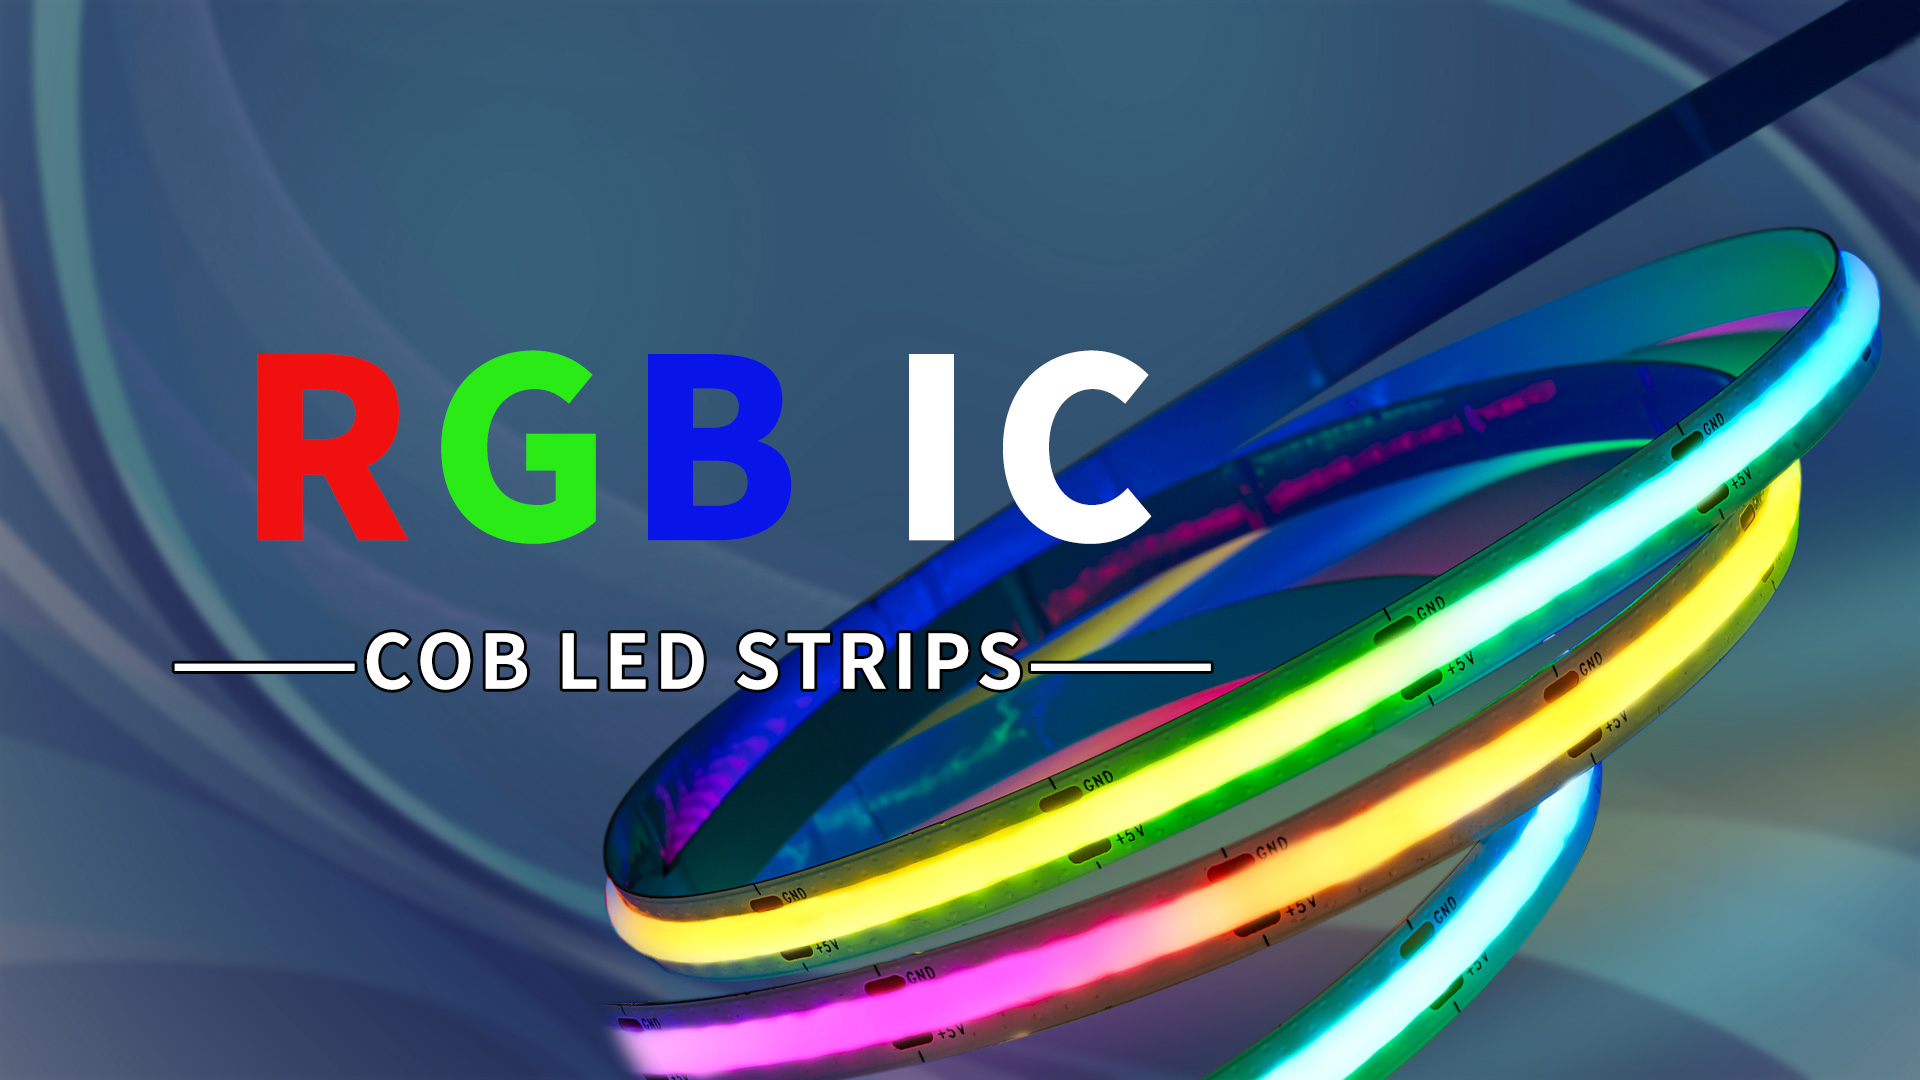 rgb ic cob led strips